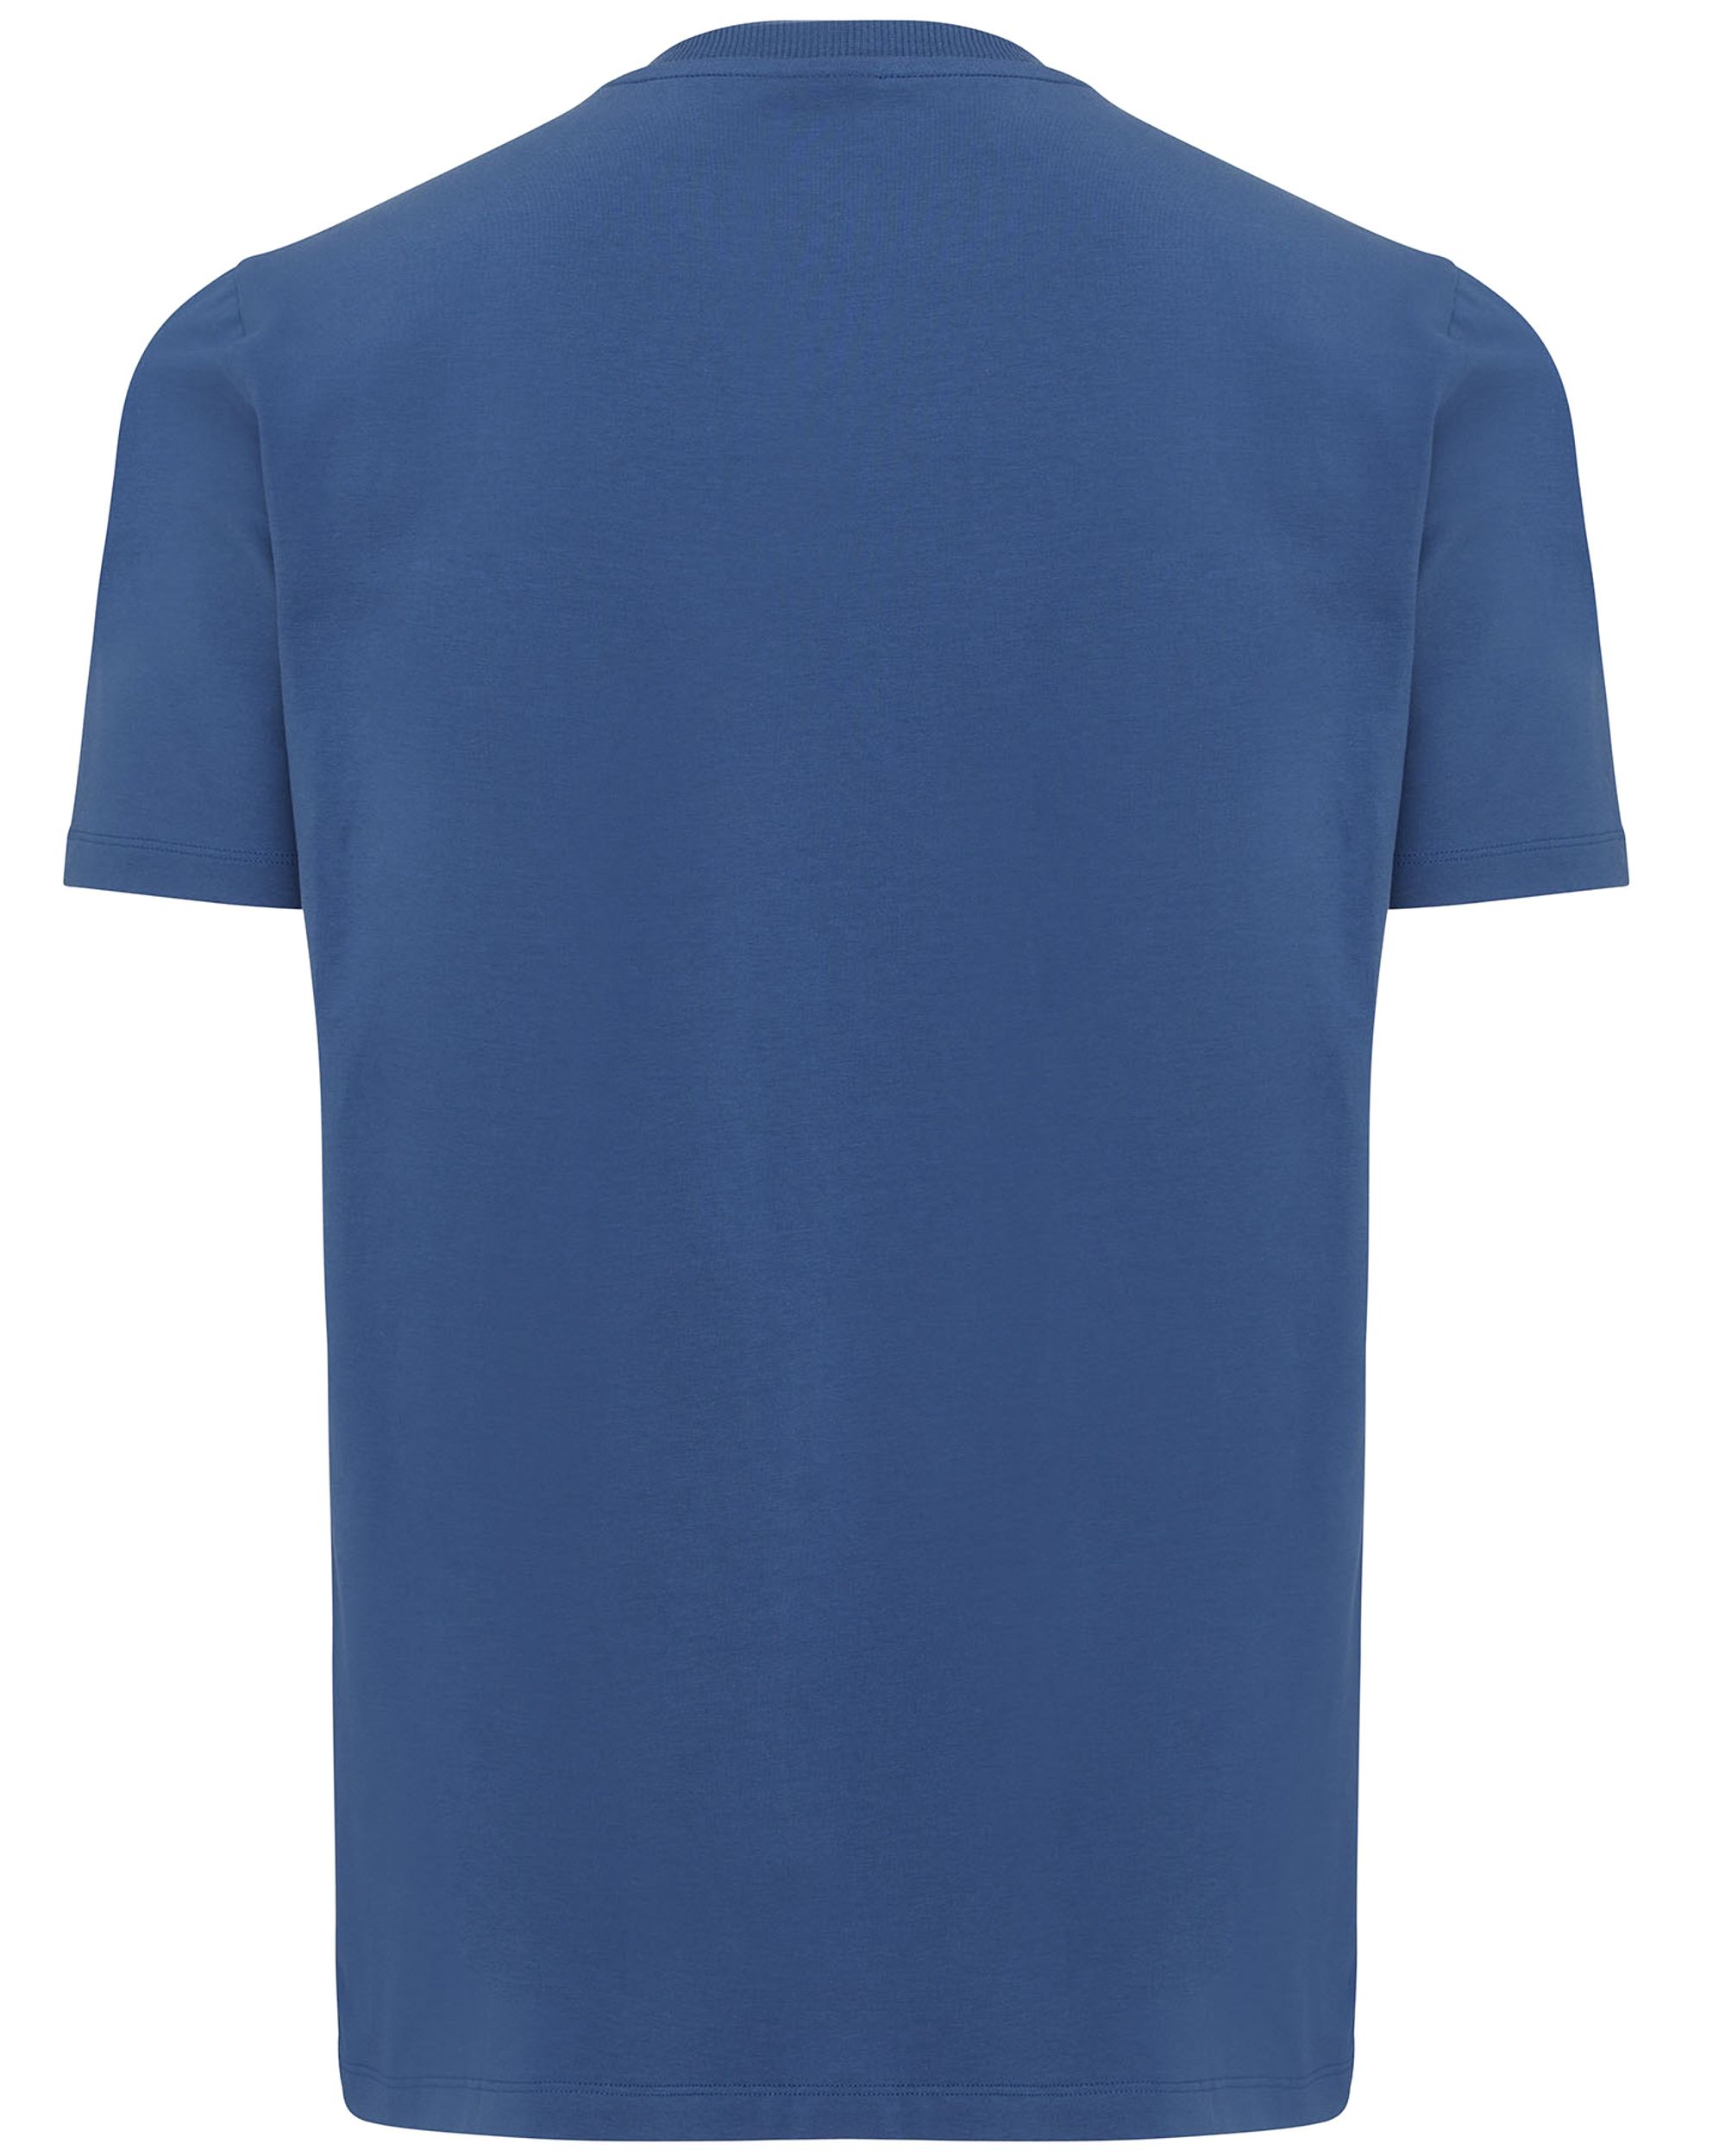 Genti T-shirt KM Blauw 092158-001-L